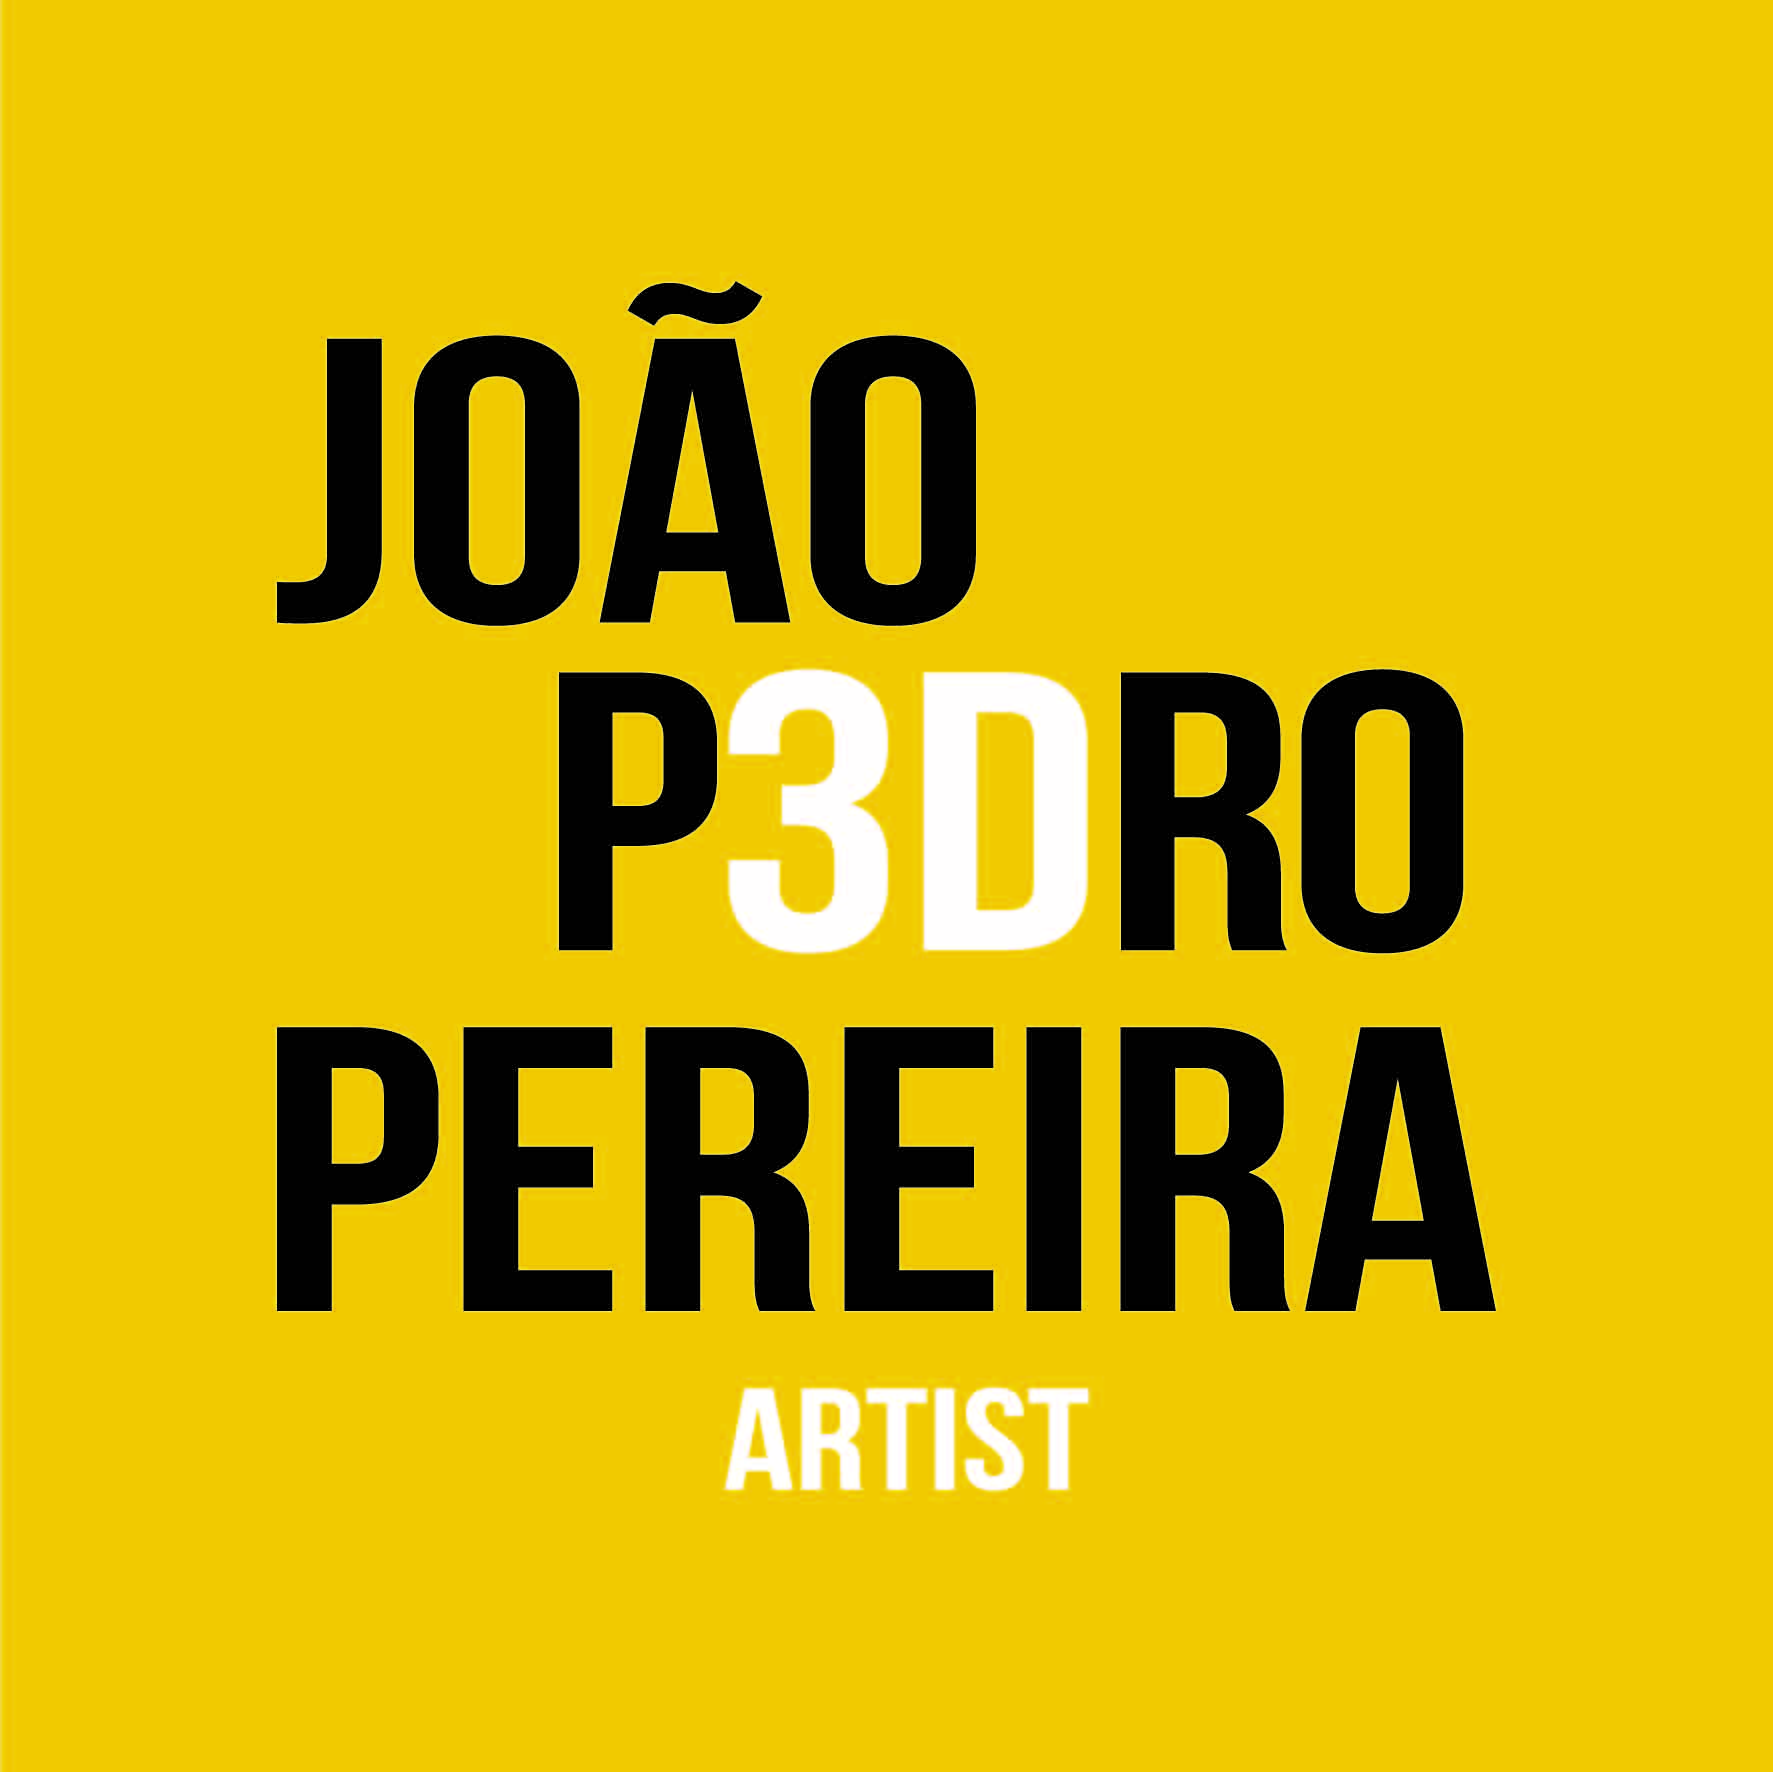 João Pereira